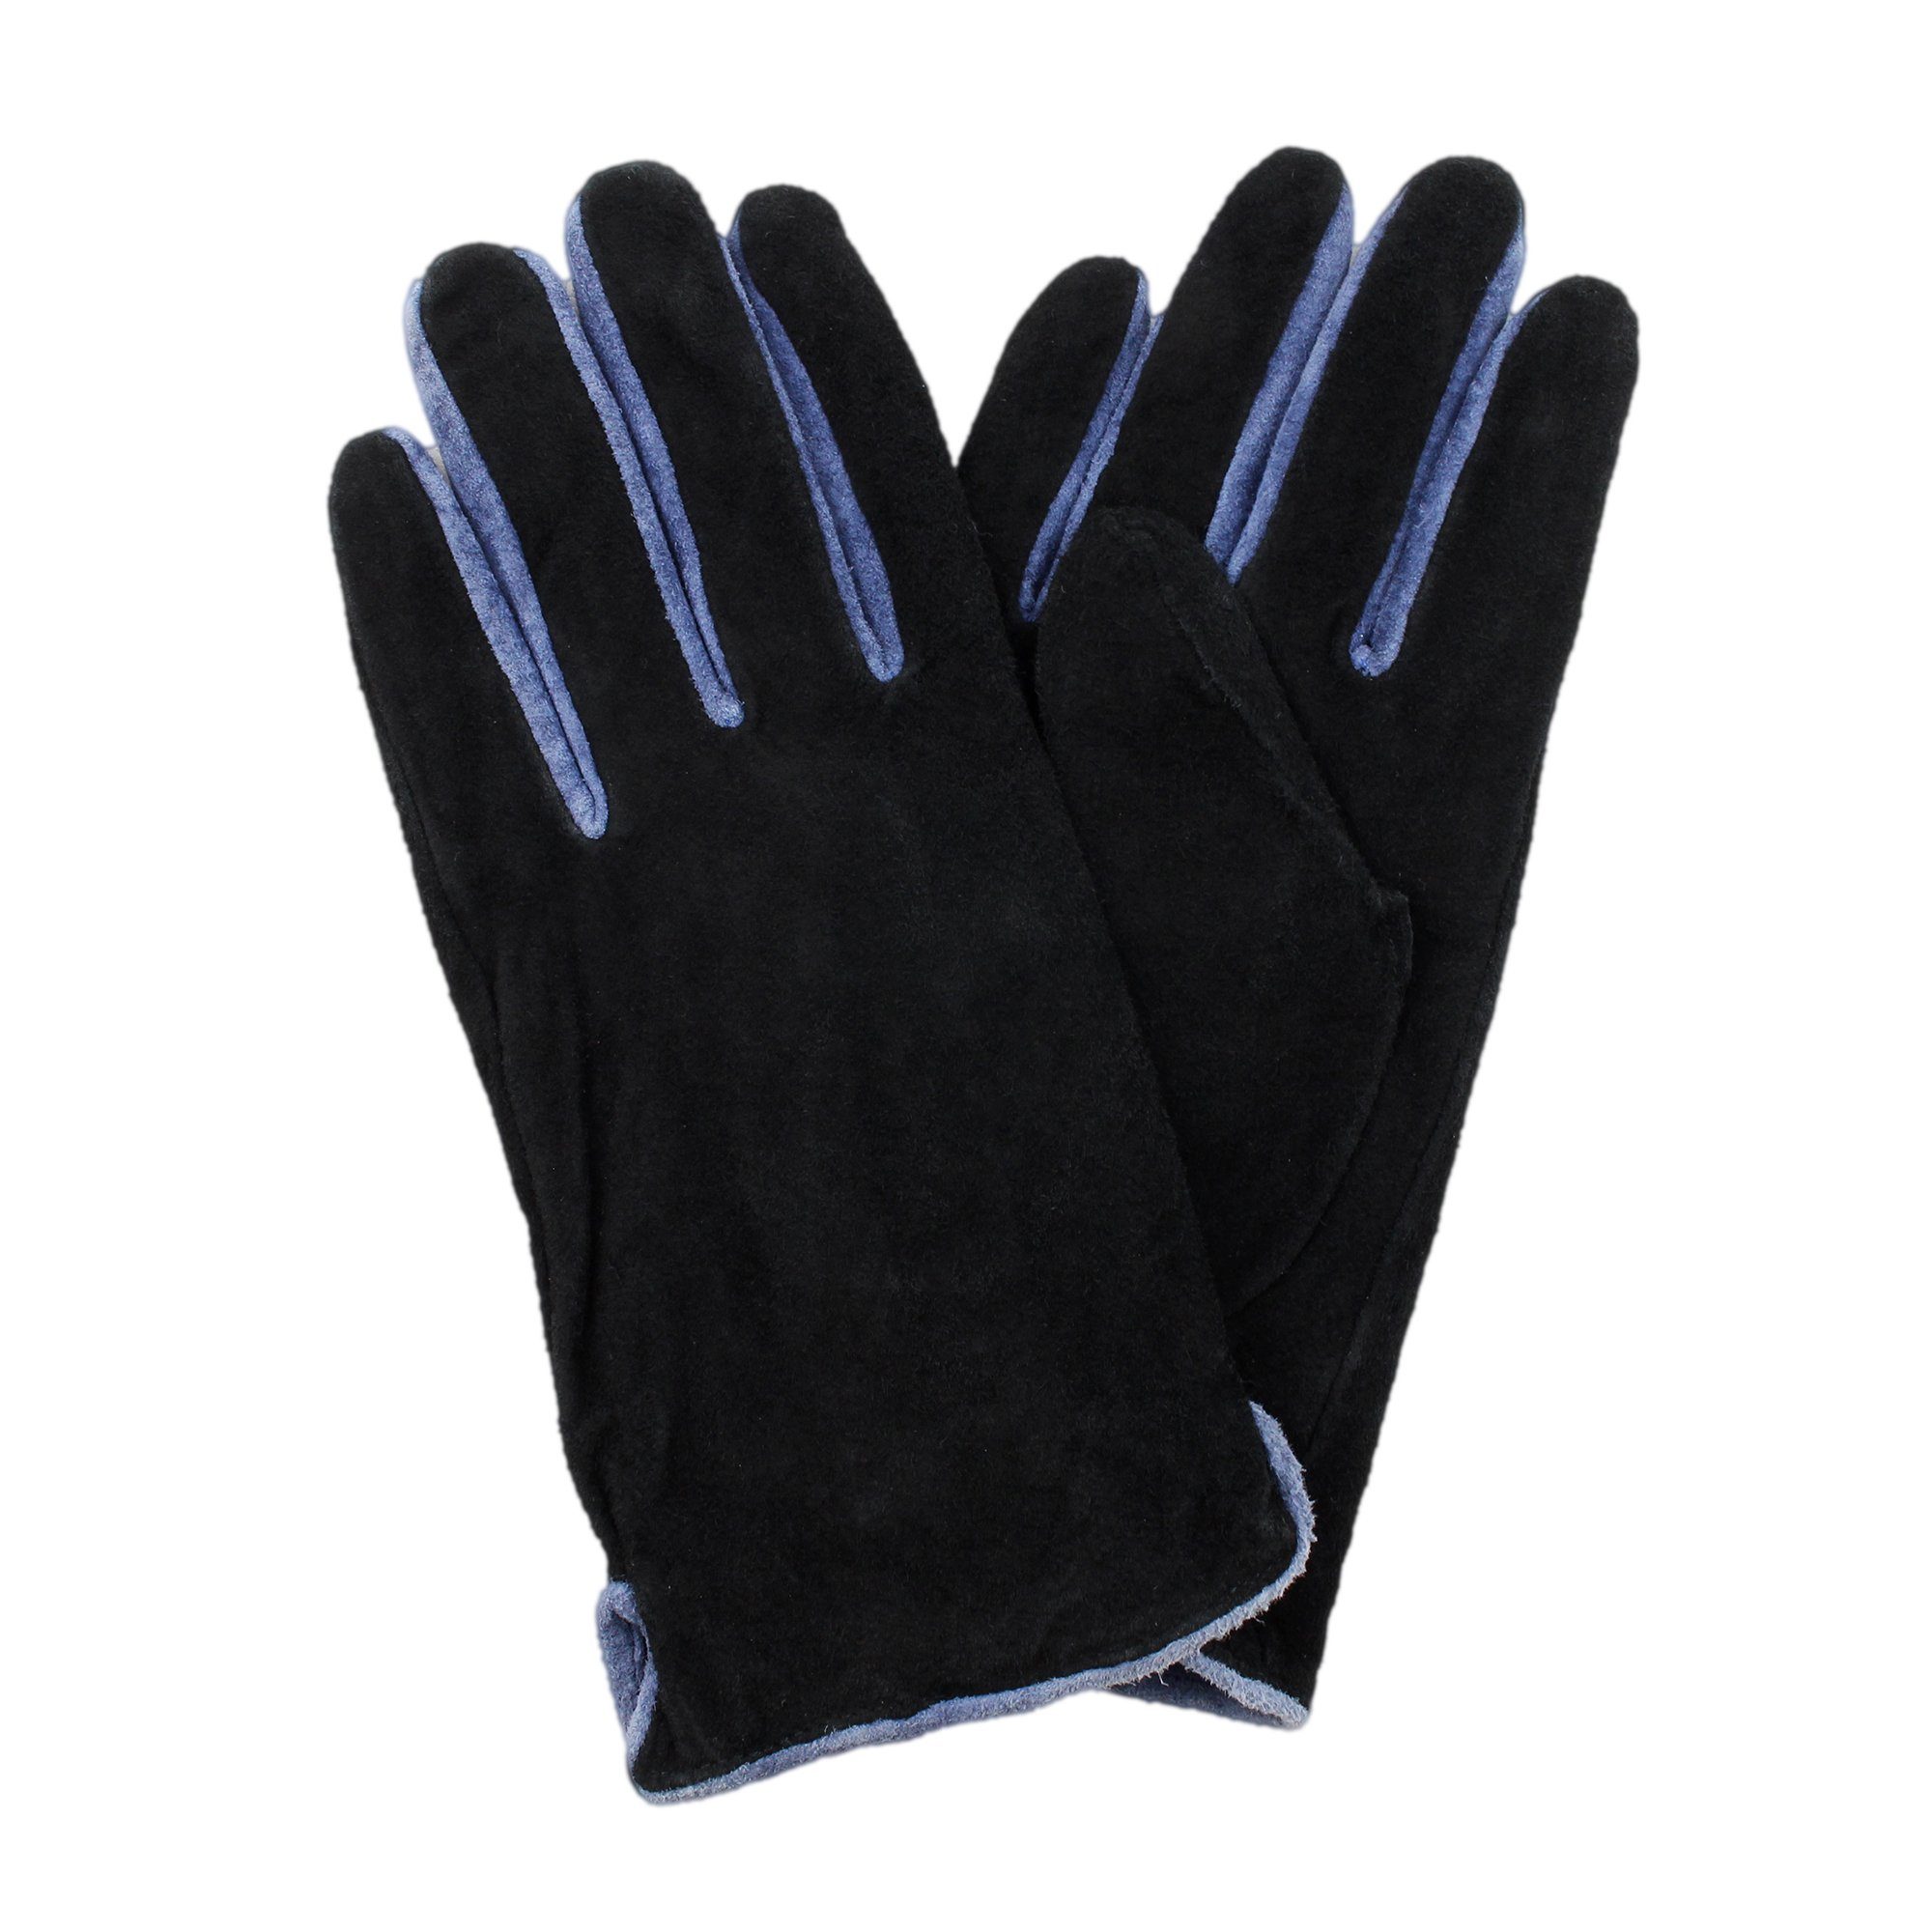 Velourleder Lederhandschuhe ZEBRO Handschuh schwarz